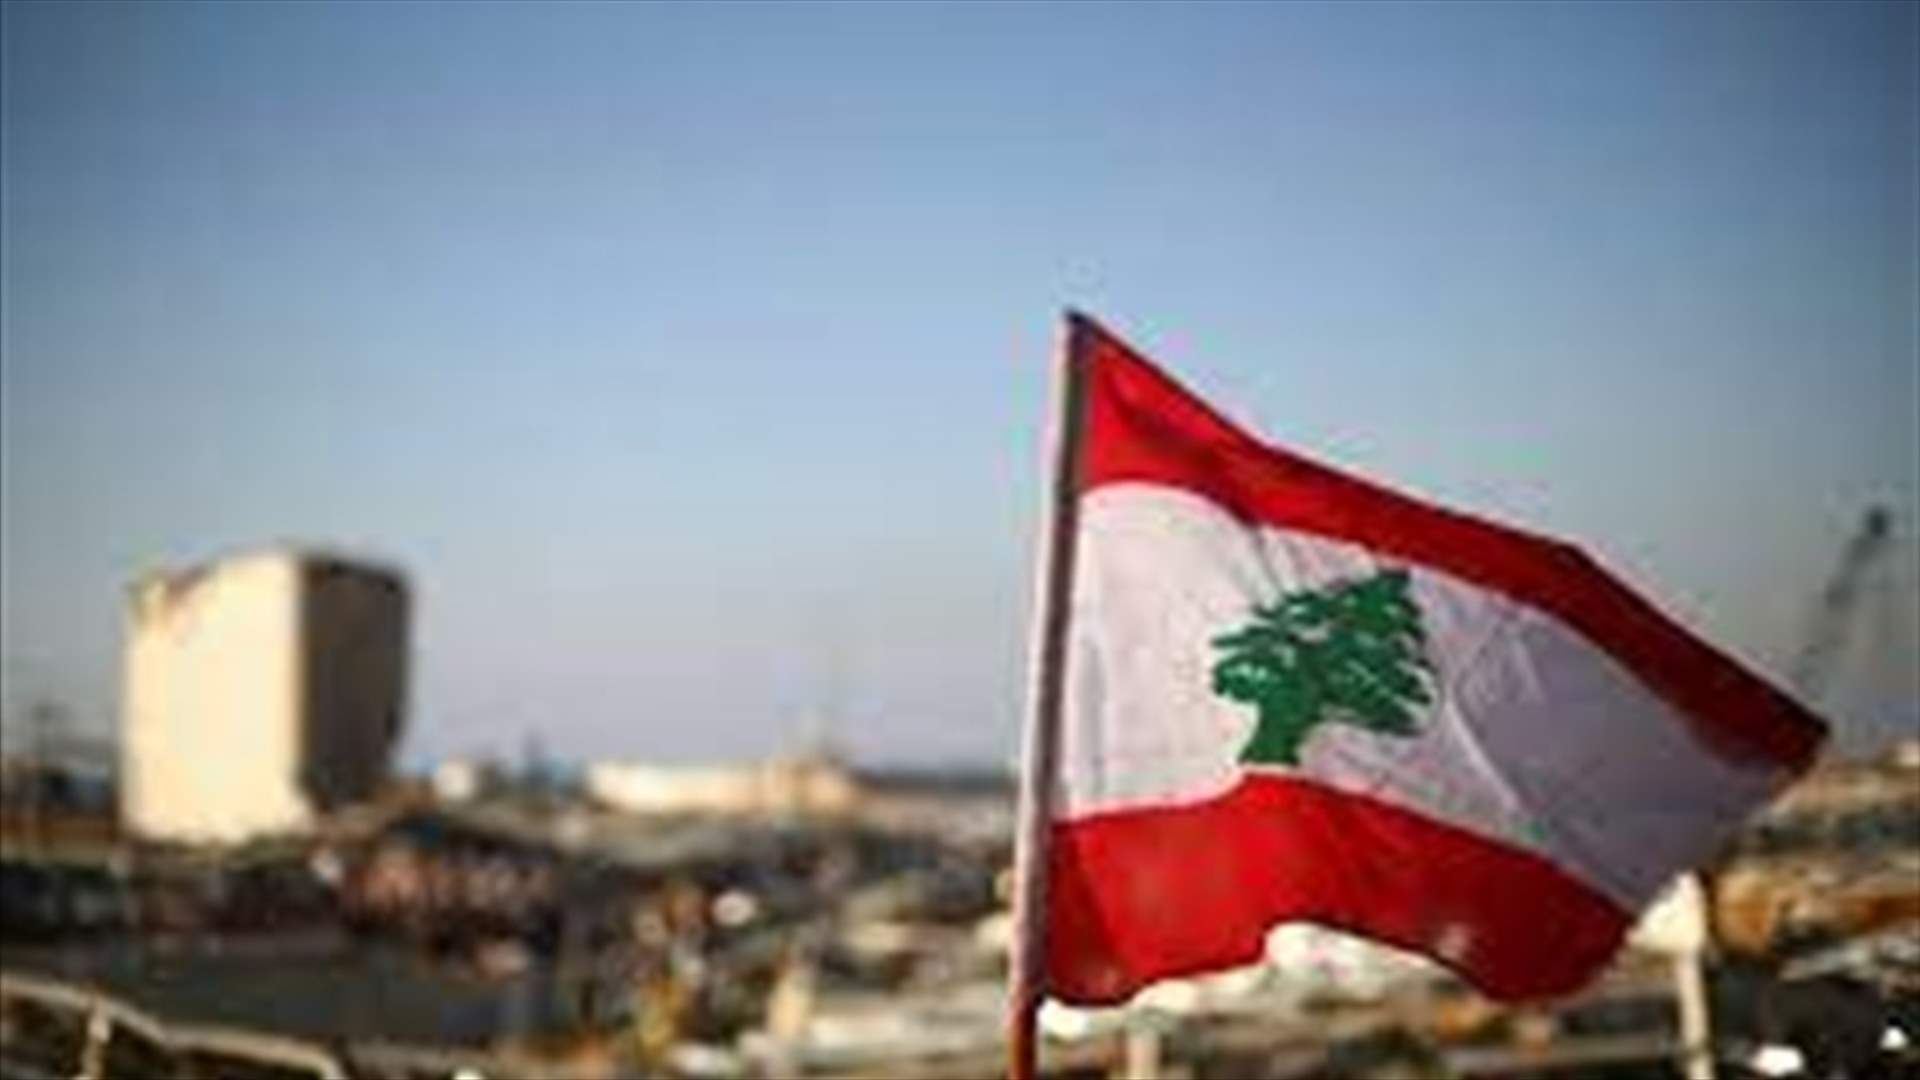 سفير اوروبي يوبّخ الطبقة السياسية اللبنانية: &quot;قد لا تجدون من يمد اليكم يد المساعدة&quot; (الجمهورية)